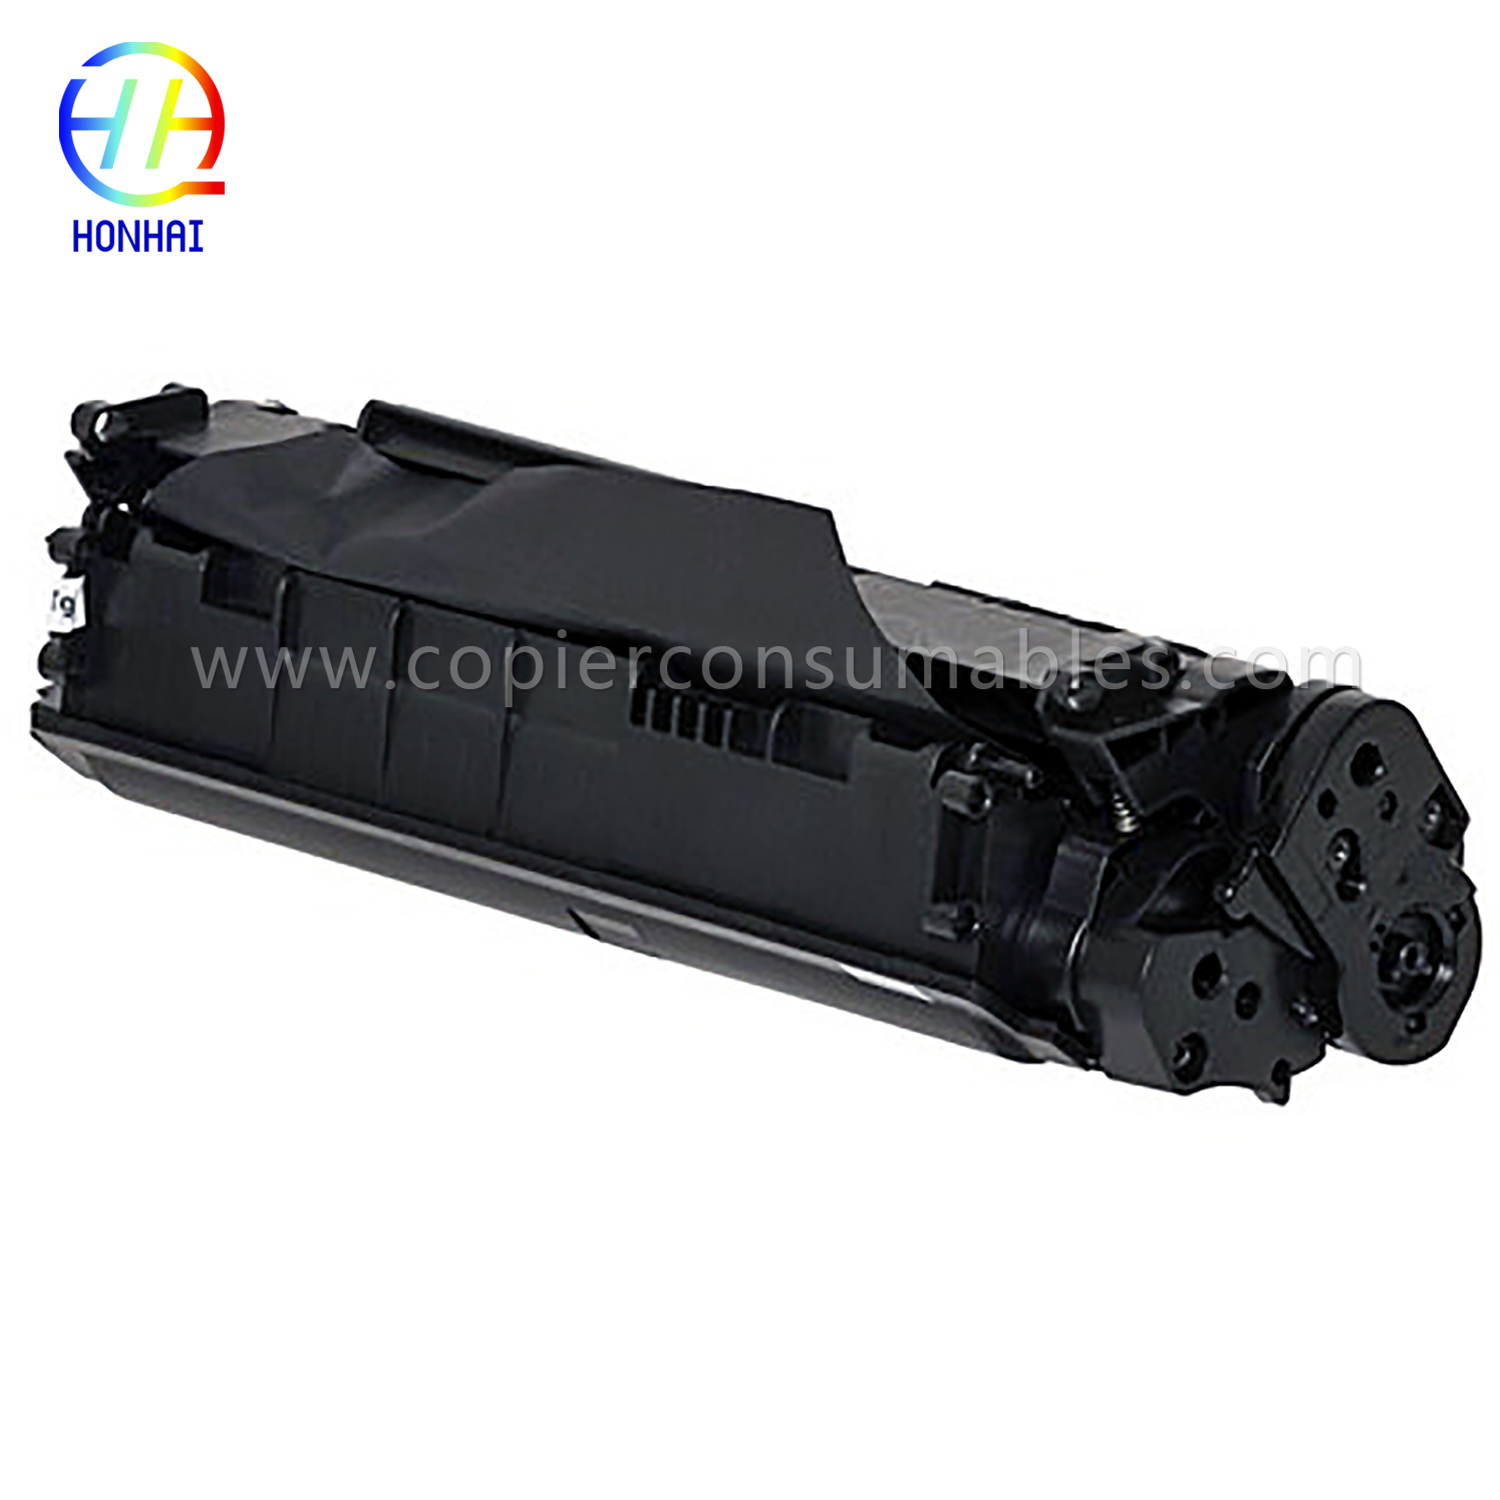 Black Toner Cartridge HP LaserJet 1010 1012 1015 1018 1020 3015 3020 3030 3050 3052 3055 M1005MFP M1319f (Q2612A) 13.9x5.2x6.4 拷贝